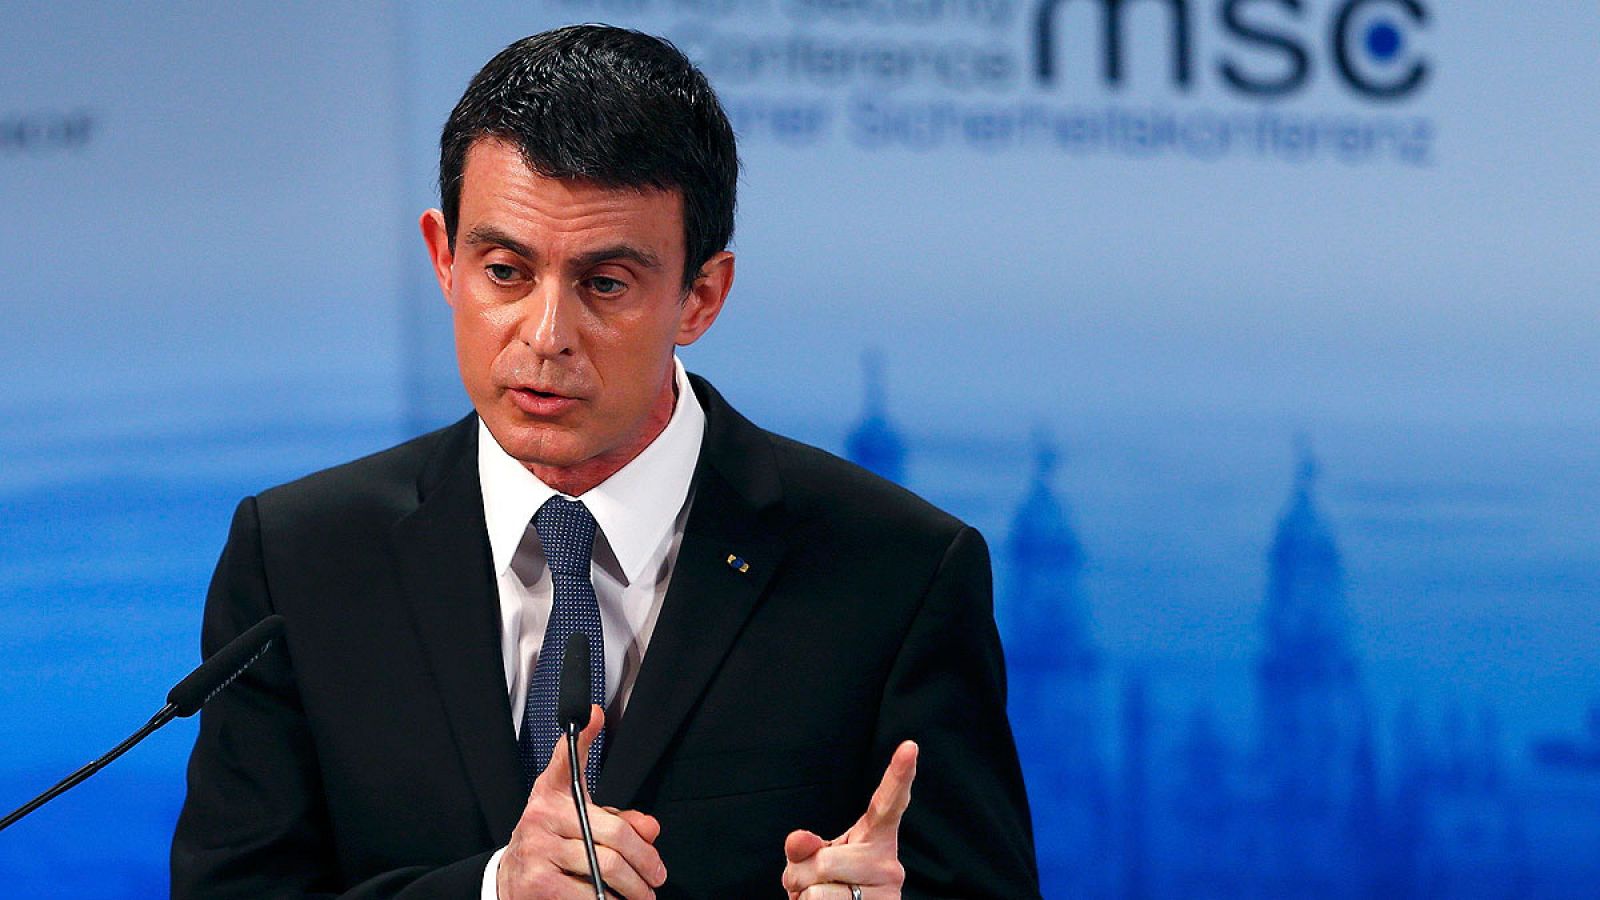 El primer ministro francés, Manuel Valls, comparece en la Conferencia de Seguridad de Múnich